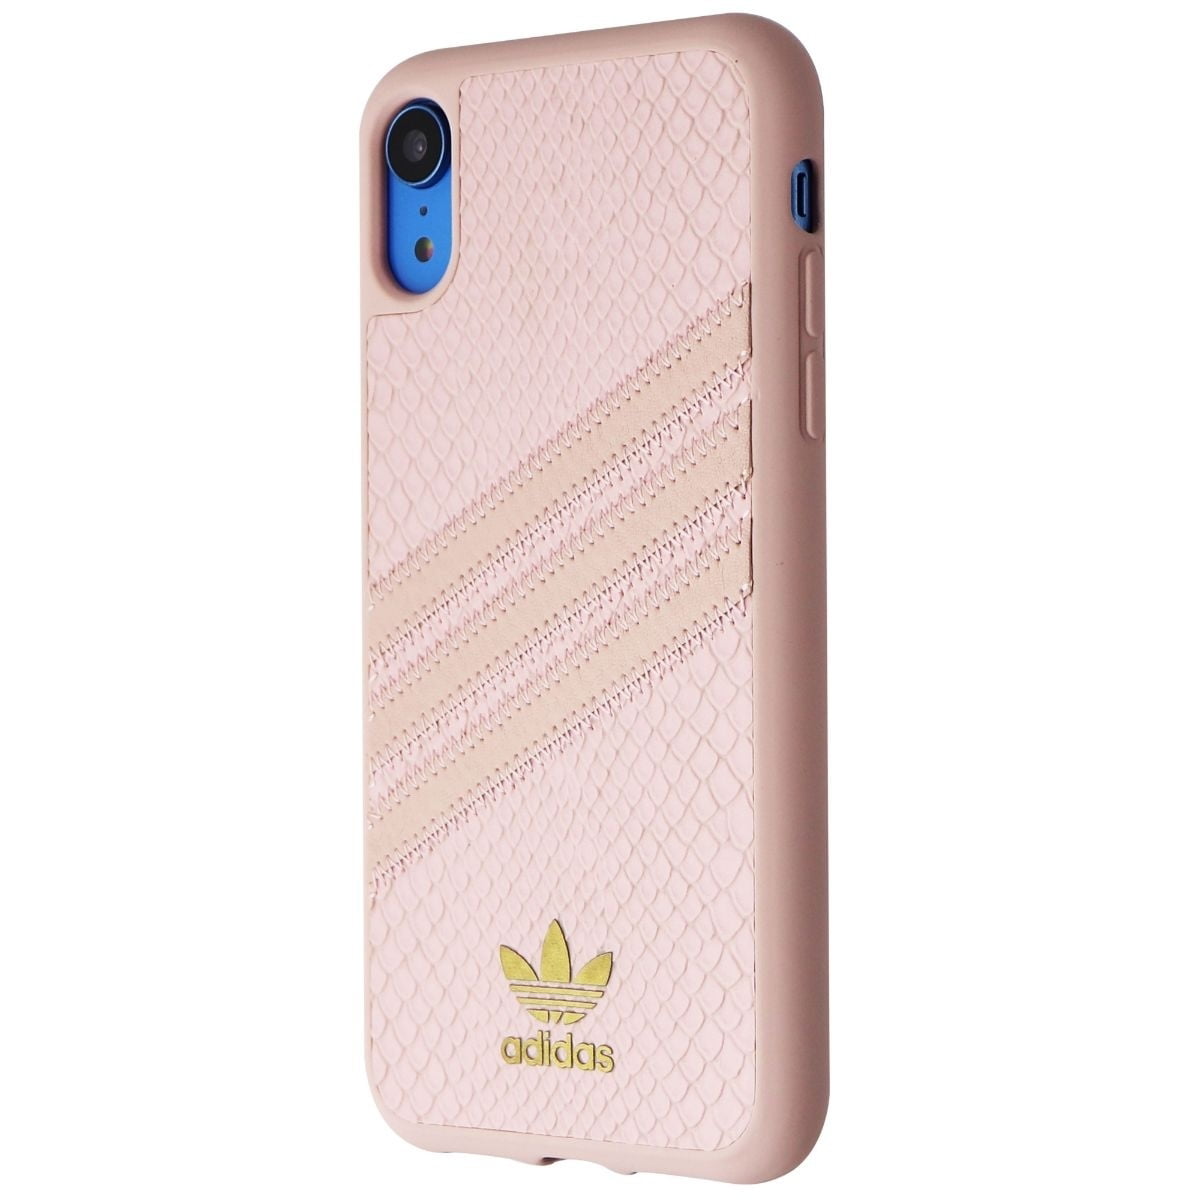 Adidas Snake Moulded 3 Stripes Snap Case For Iphone Xr Pink Gold Metallic Refurbished Walmart Com Walmart Com